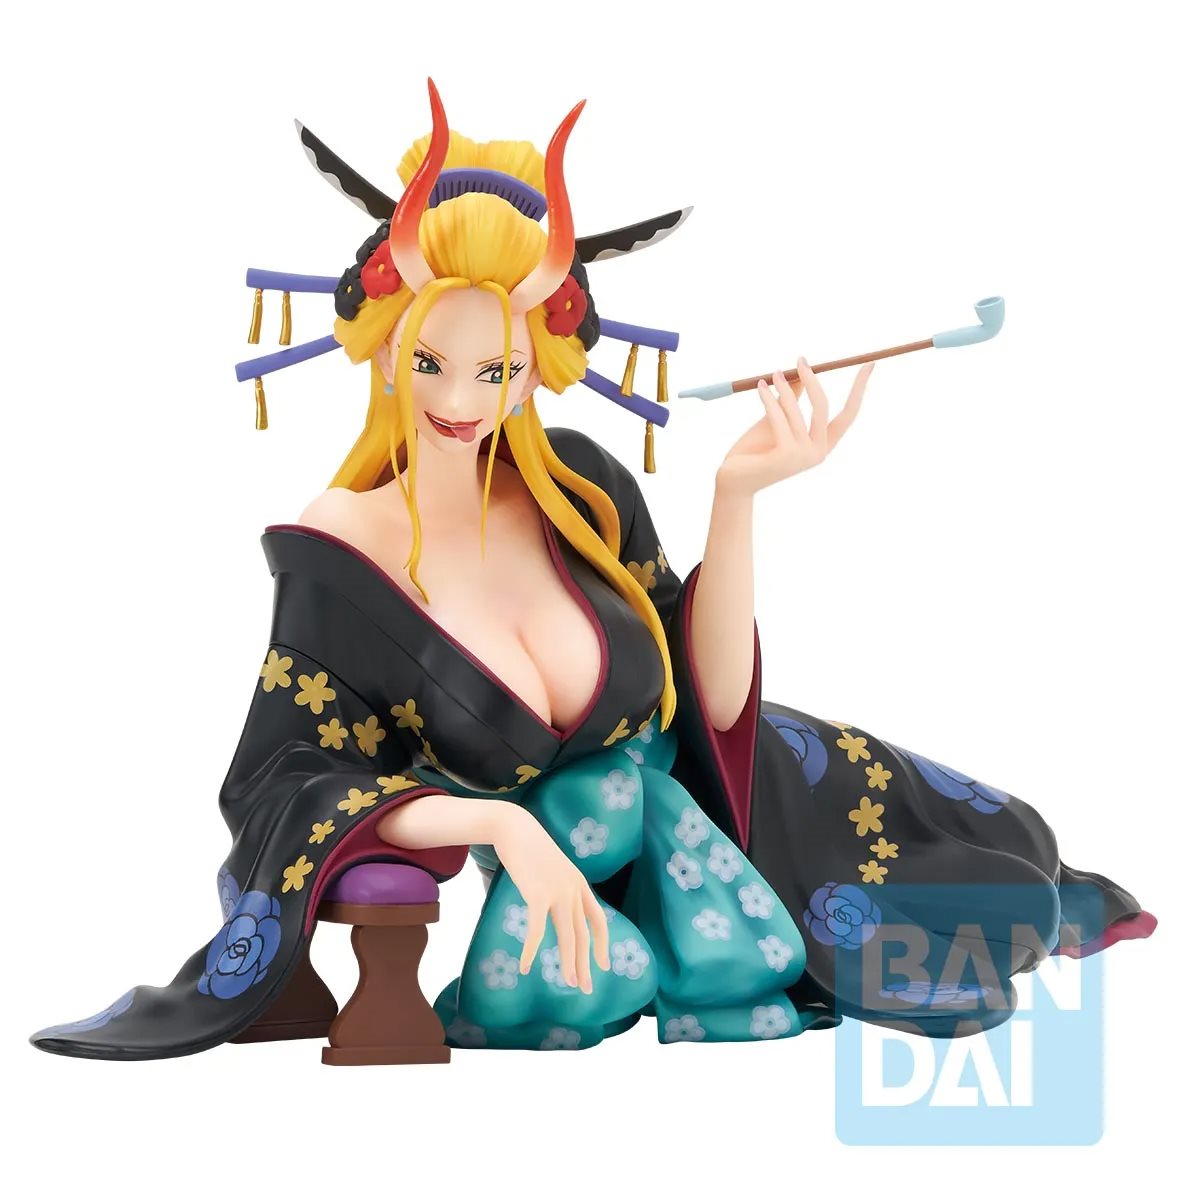 Bandai Tamashii Nations: One Piece - Black Maria Estatua Ichibansho Tobiroppo